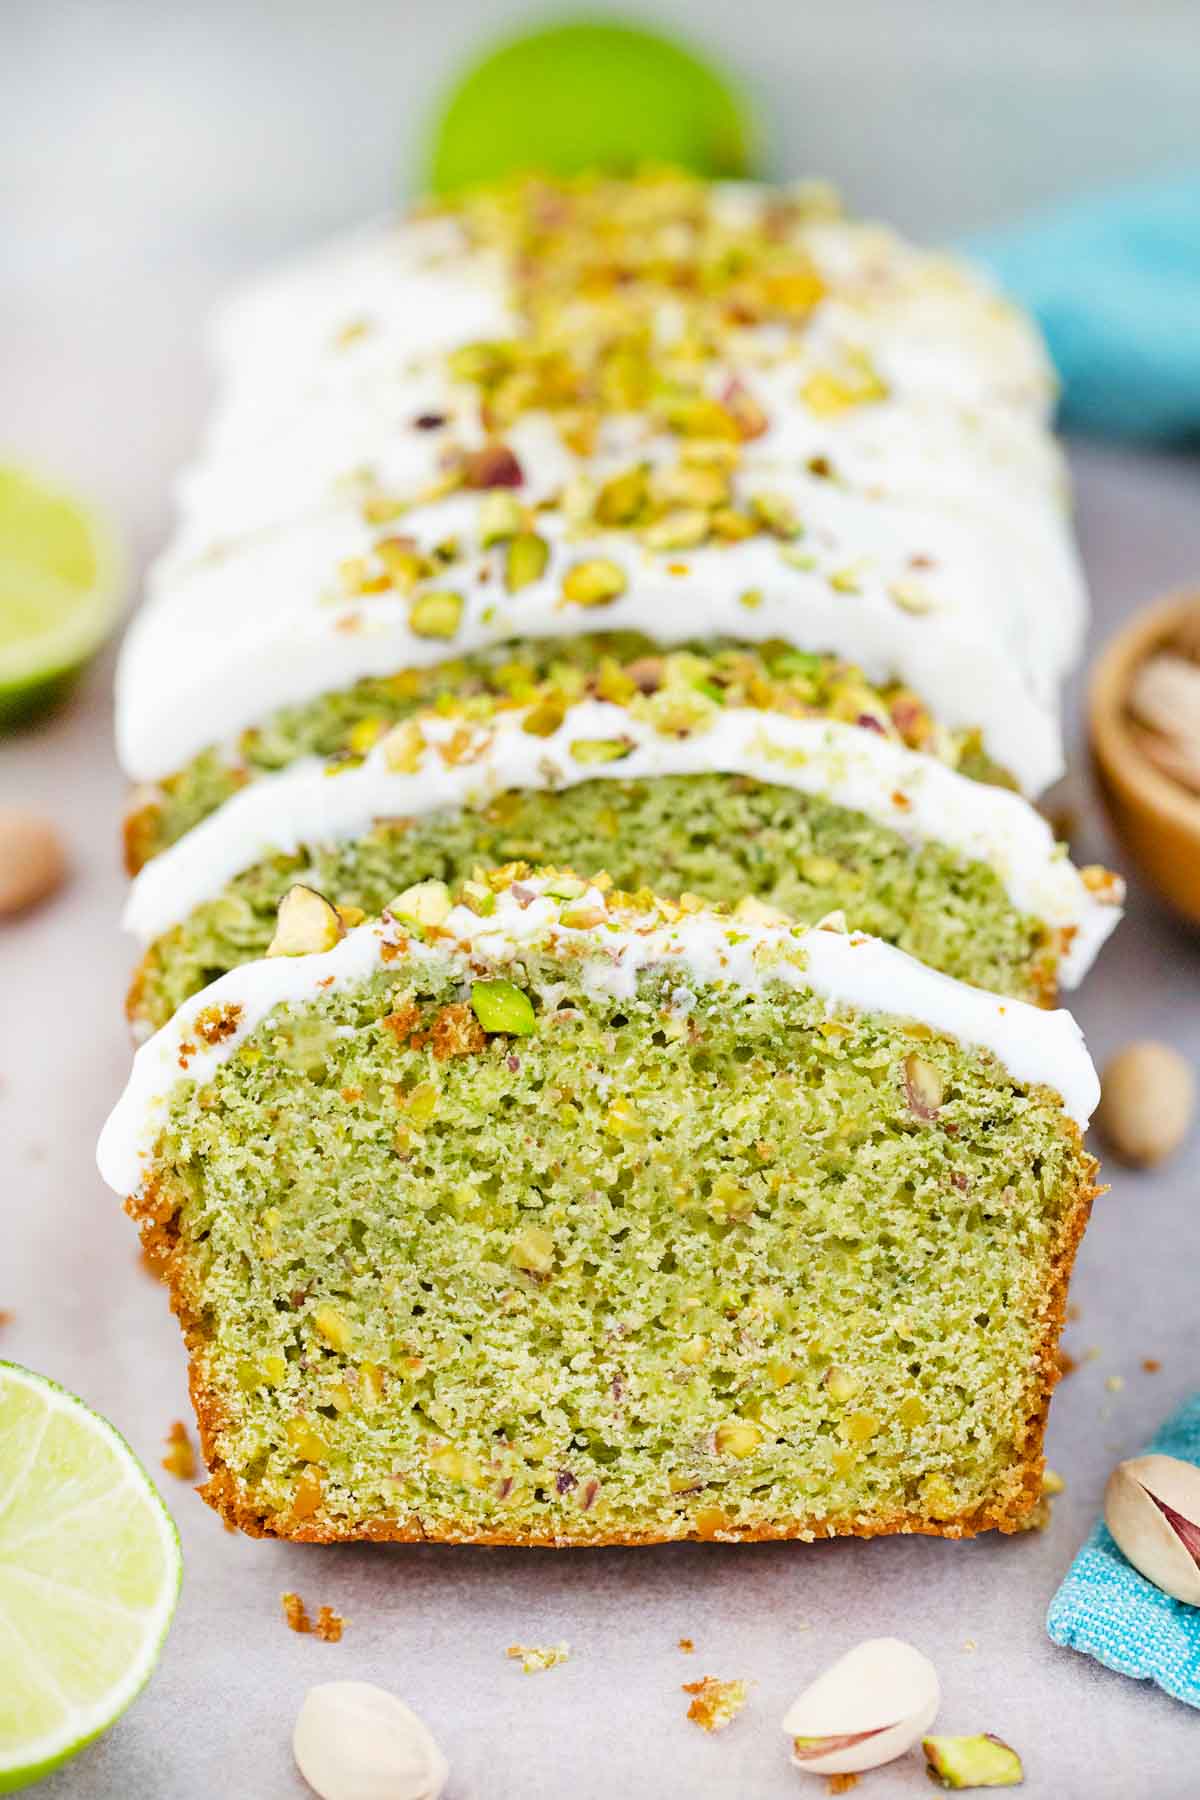 Pistachio and lemon layer cake - Recipes - delicious.com.au